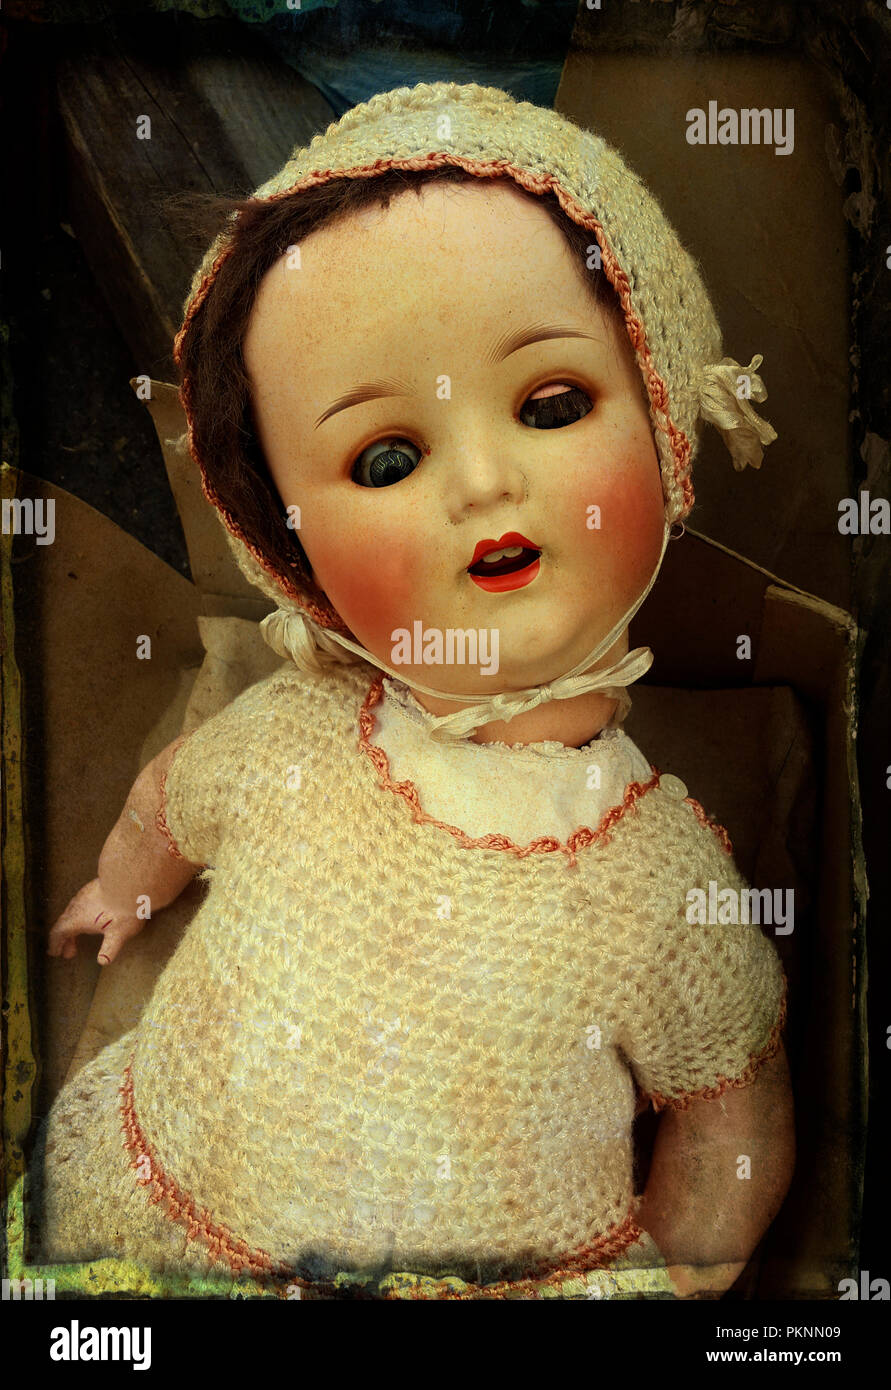 Vecchia bambola immagini e fotografie stock ad alta risoluzione - Alamy